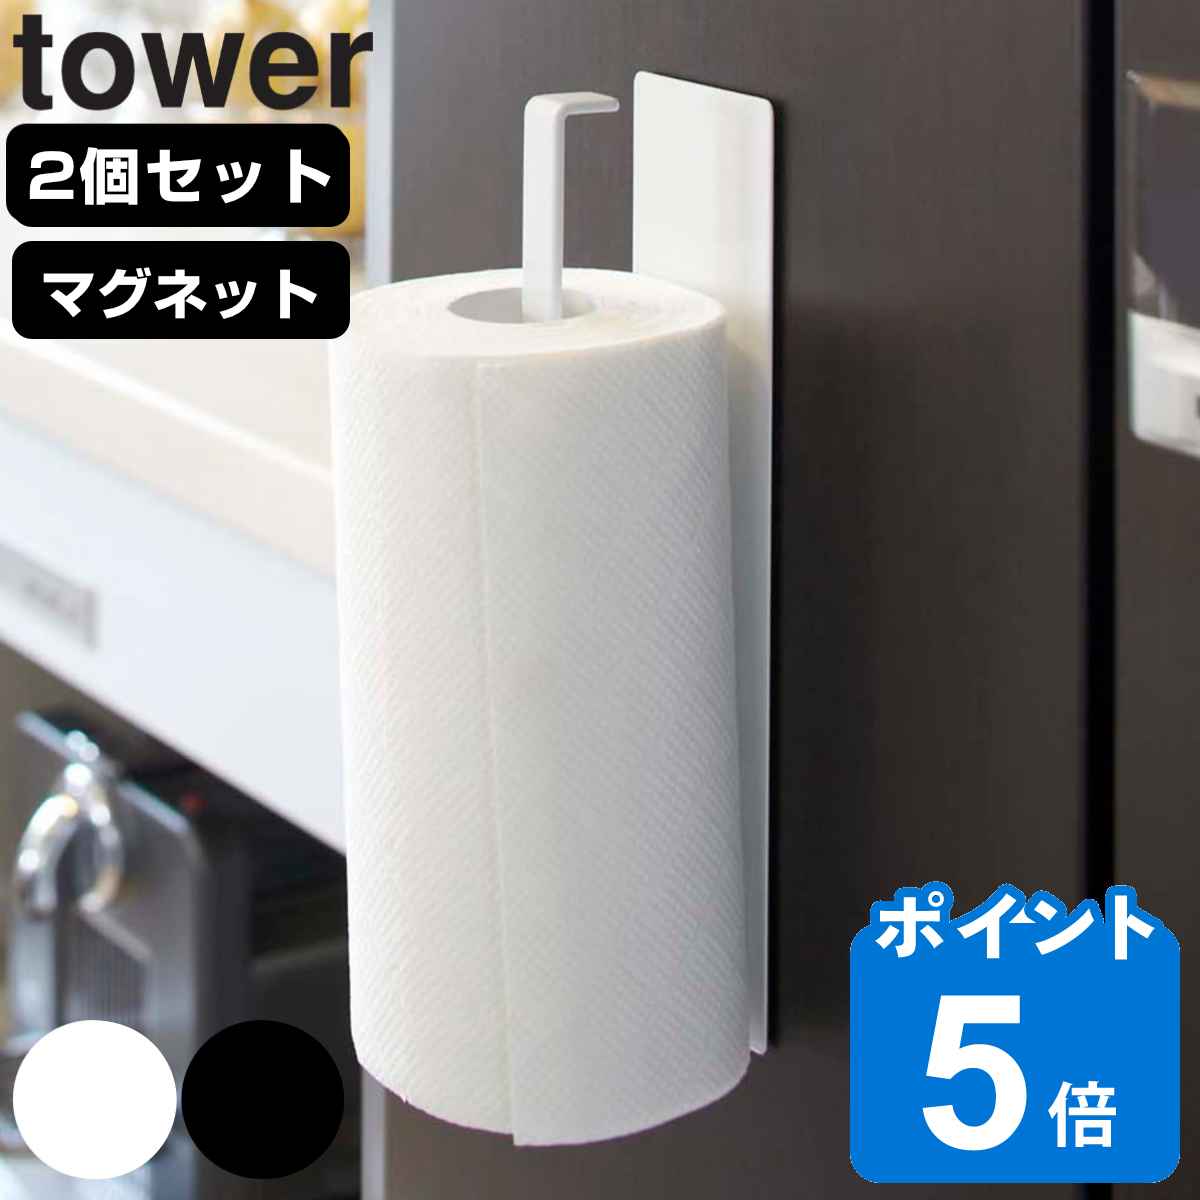 山崎実業 tower マグネットキッチンペーパーホルダー タワー 2個セット